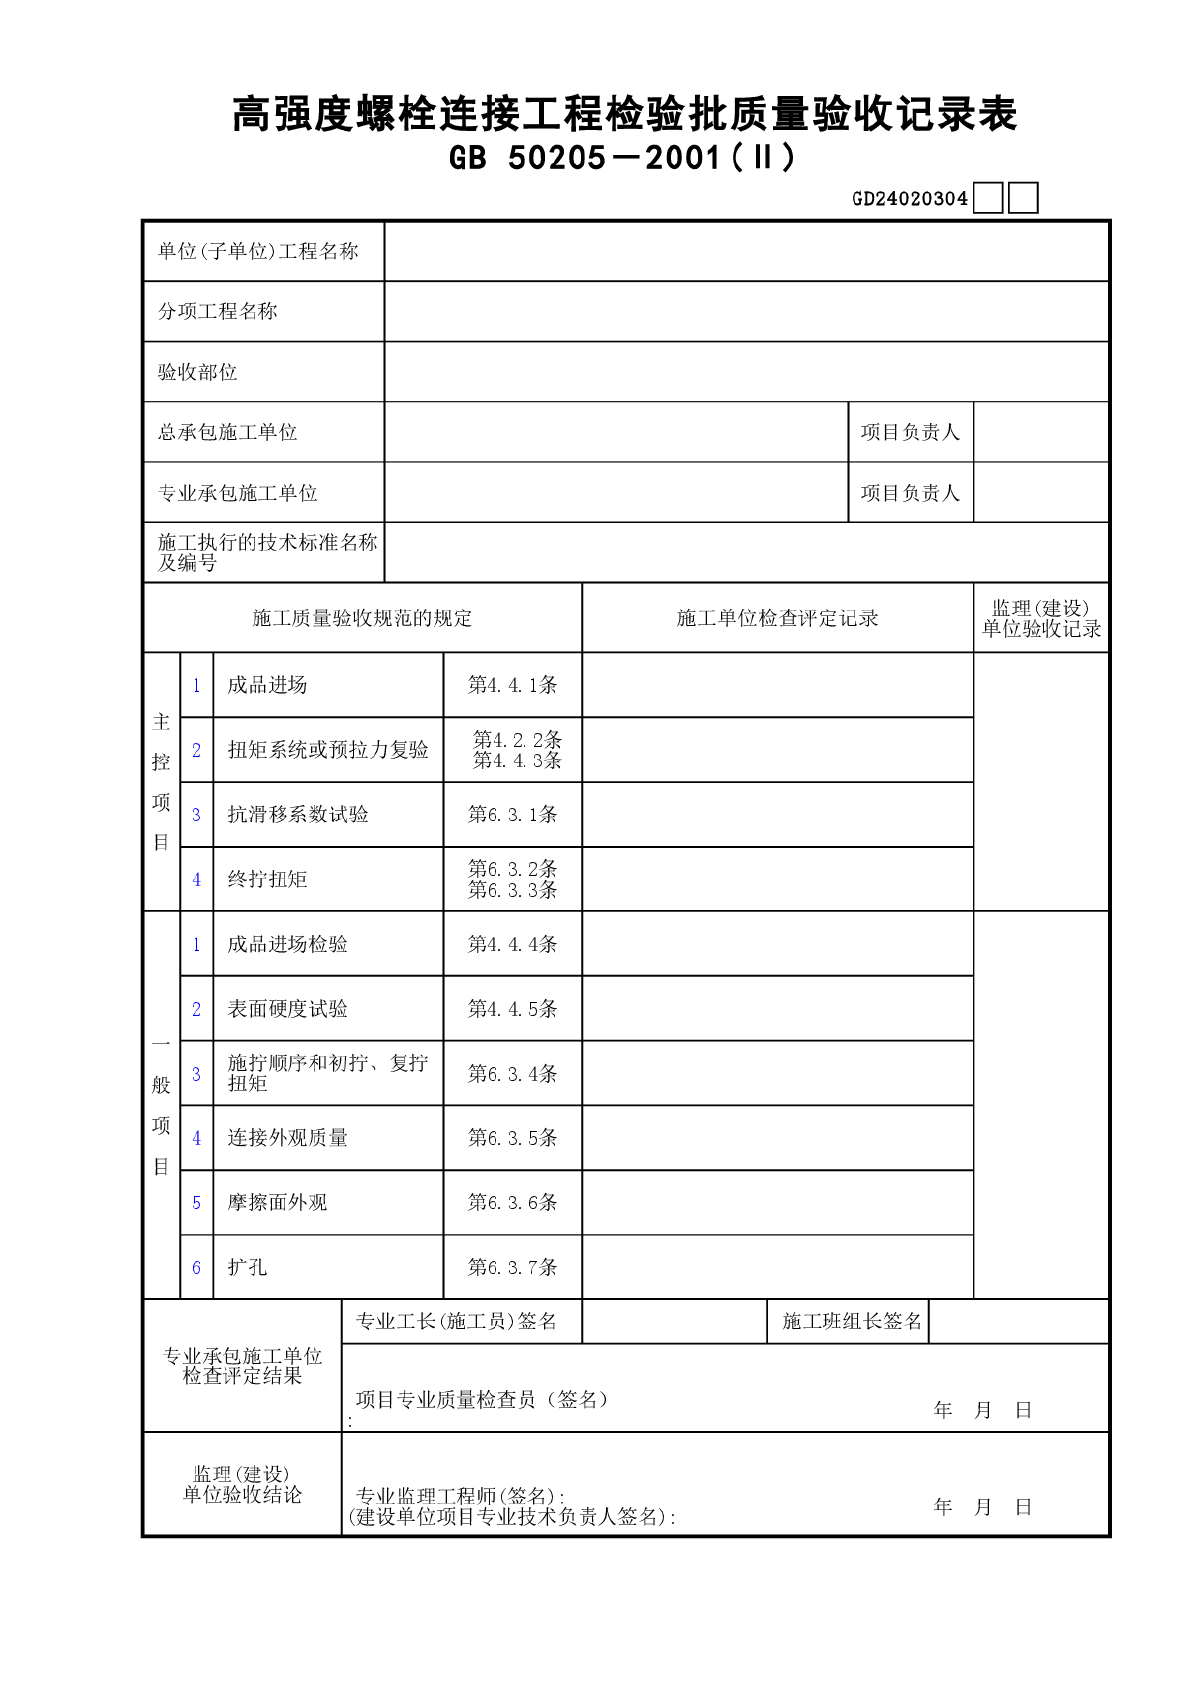 04高强度螺栓连接工程检验批质量验收记录表(Ⅱ)GD24020304